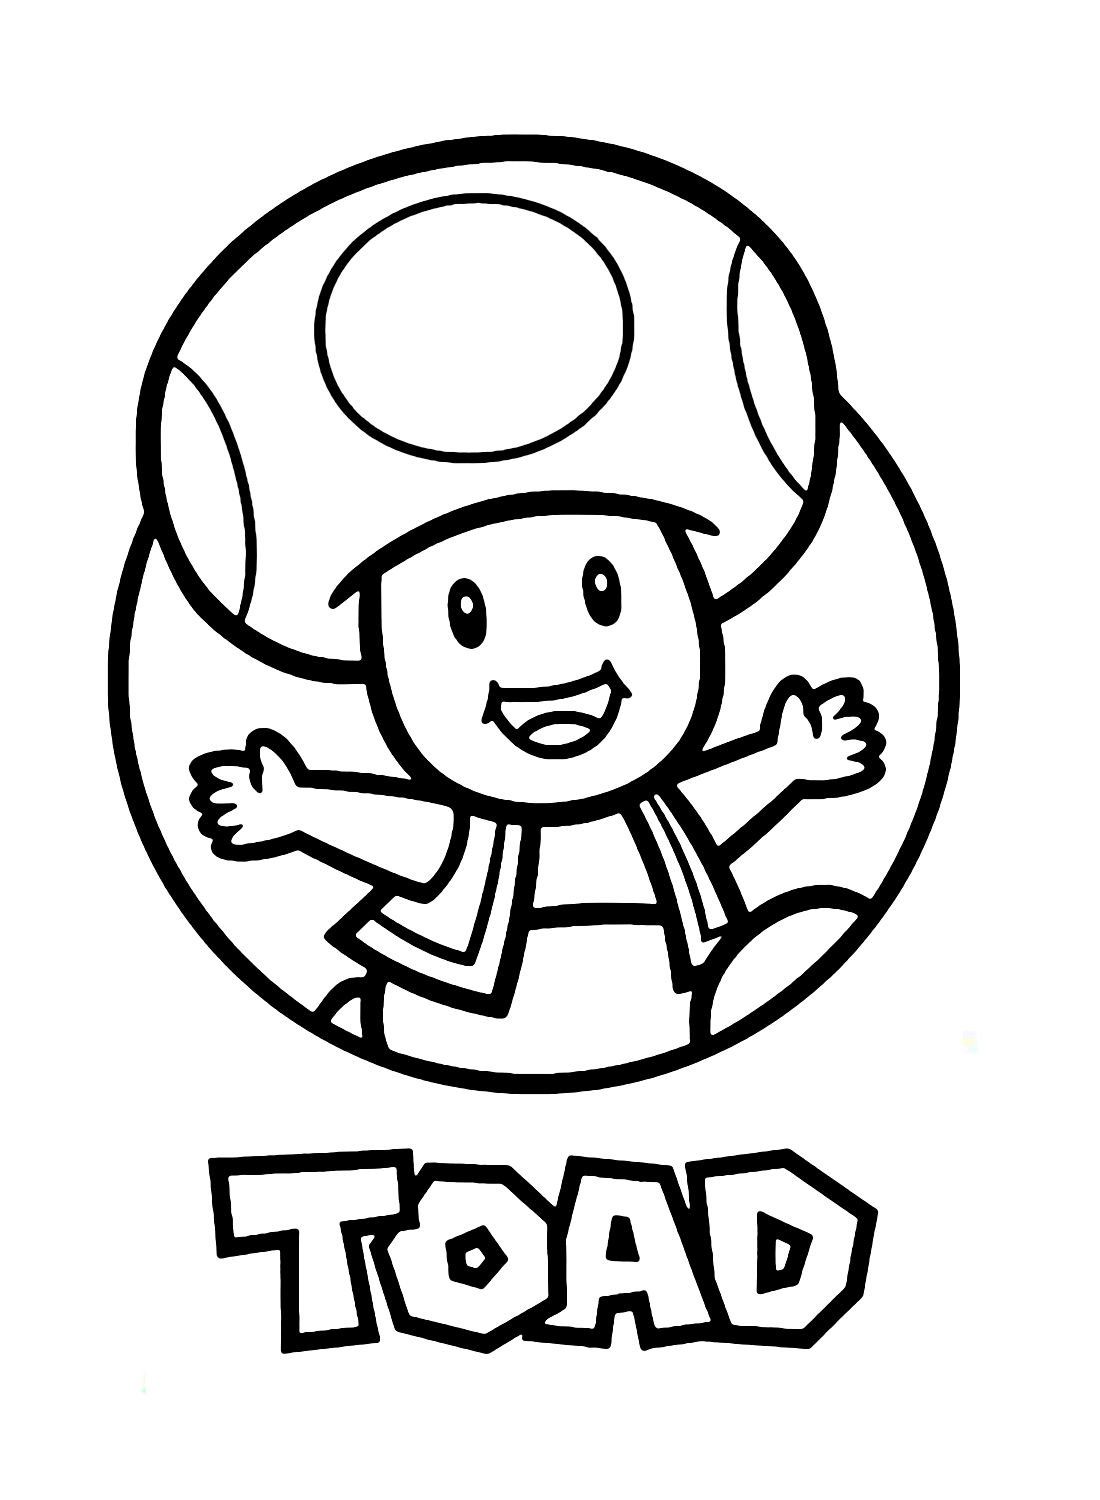 Toad Super Mario kleurplaat